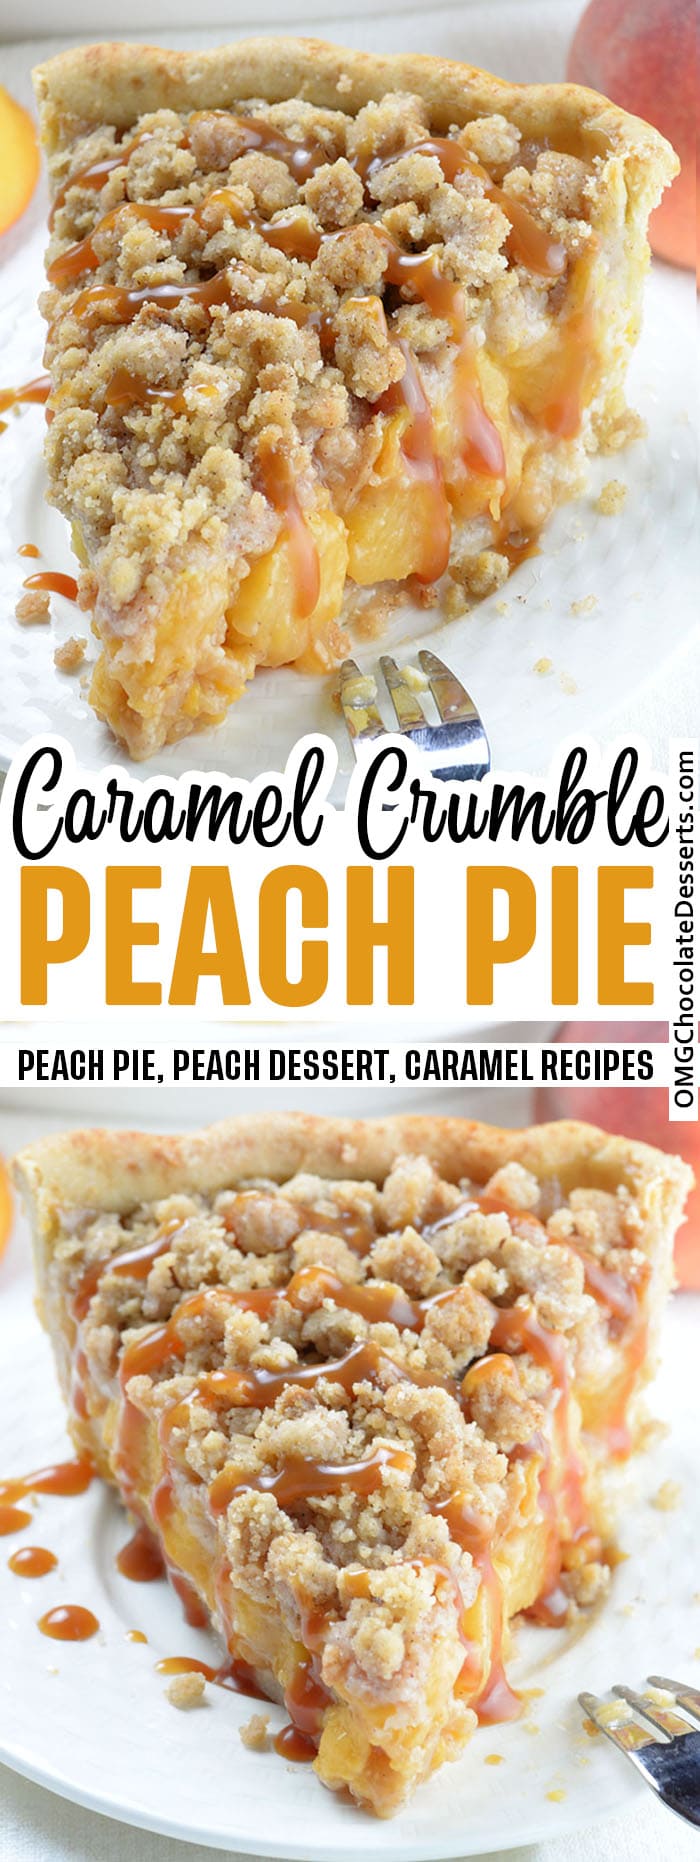 Crumble Peach Pie